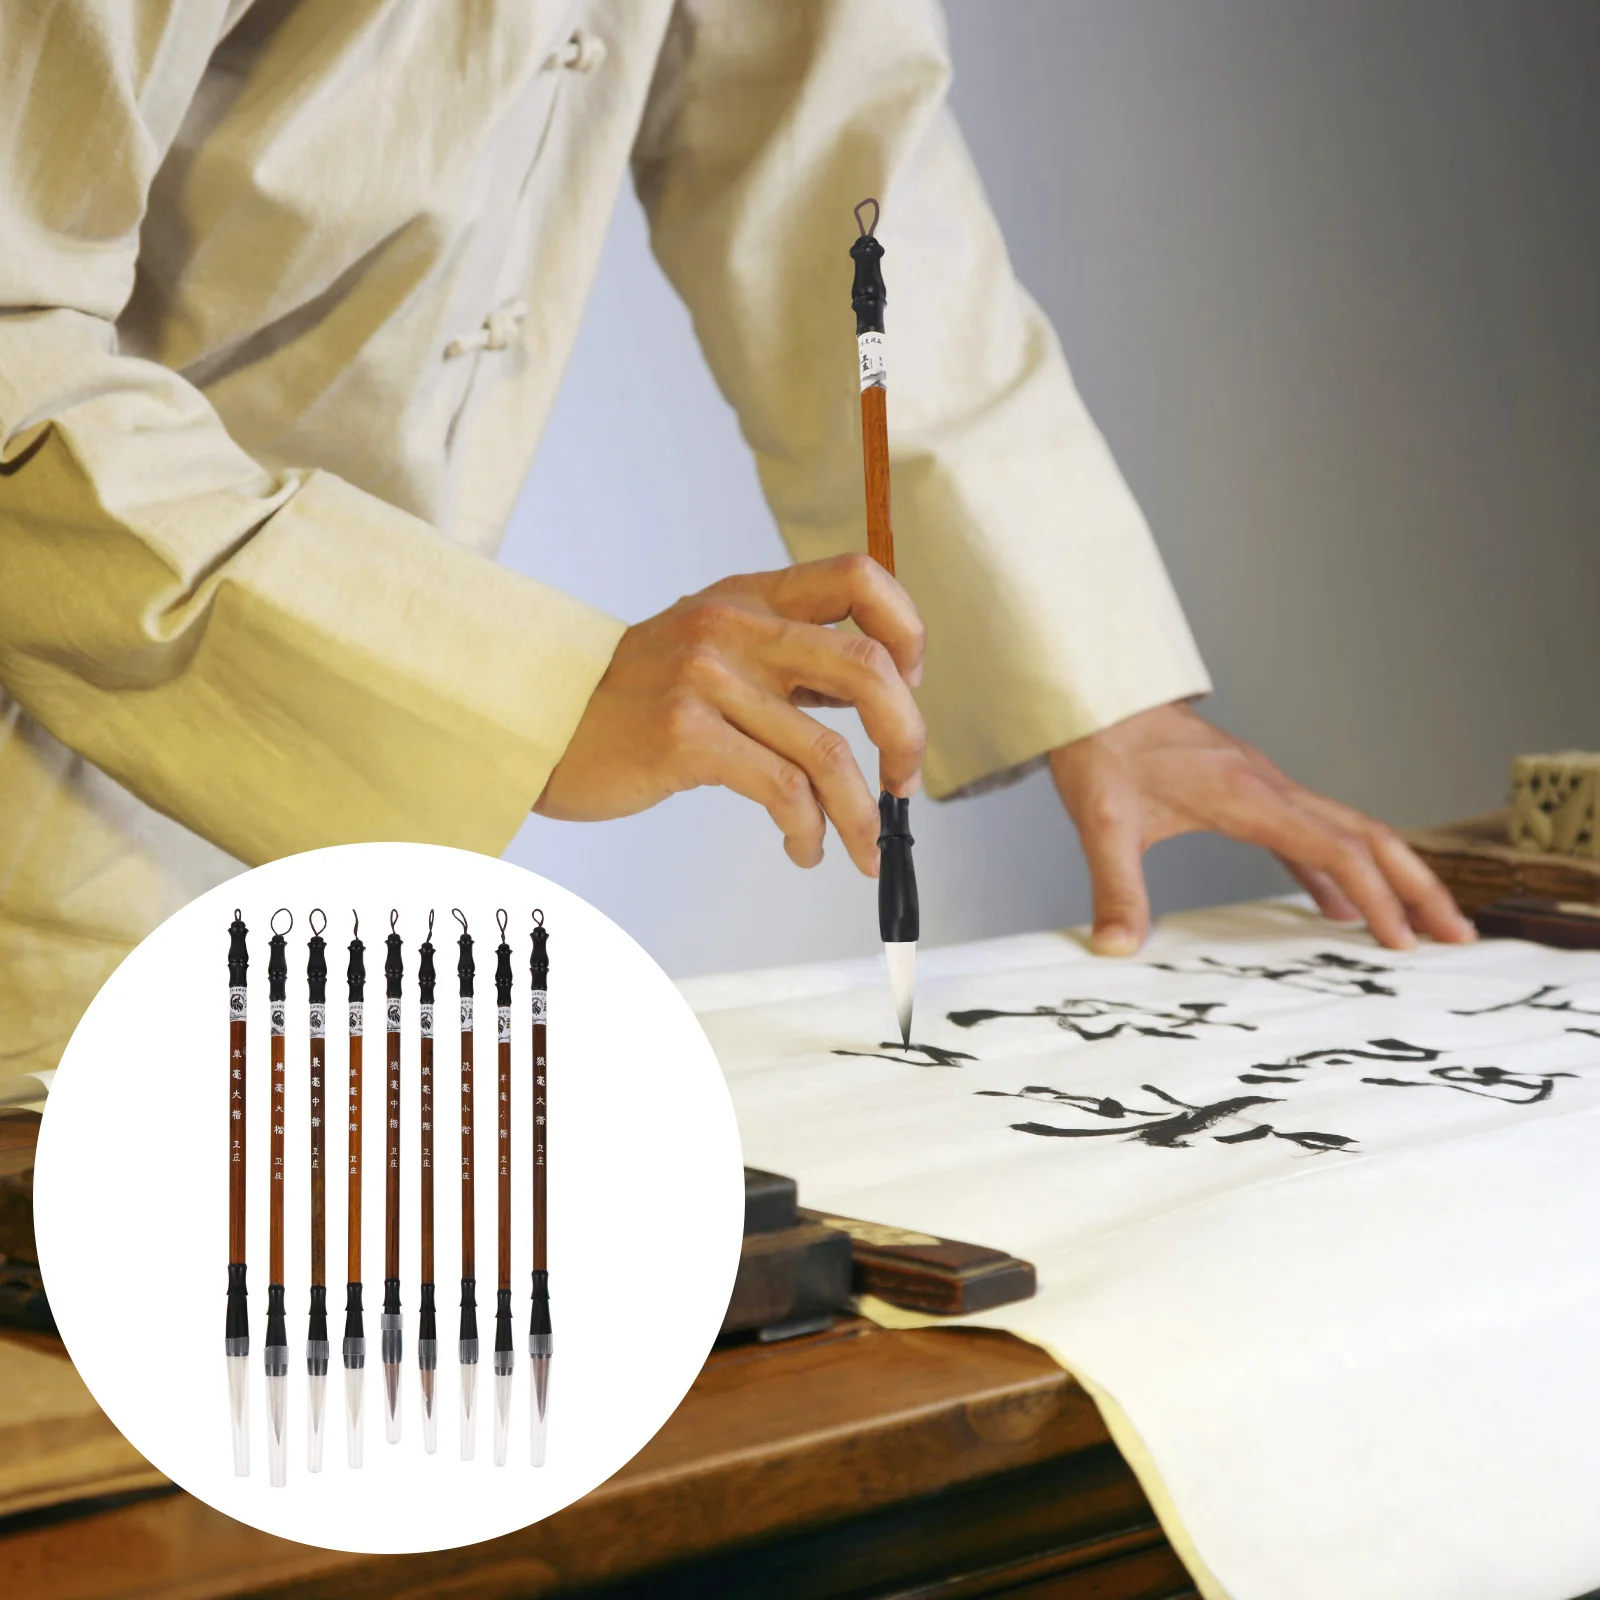 Çin Kaligrafi Fırçaları Taşınabilir Boyama Fırçaları (Açık Kahverengi)1 Torba Görüntü 0